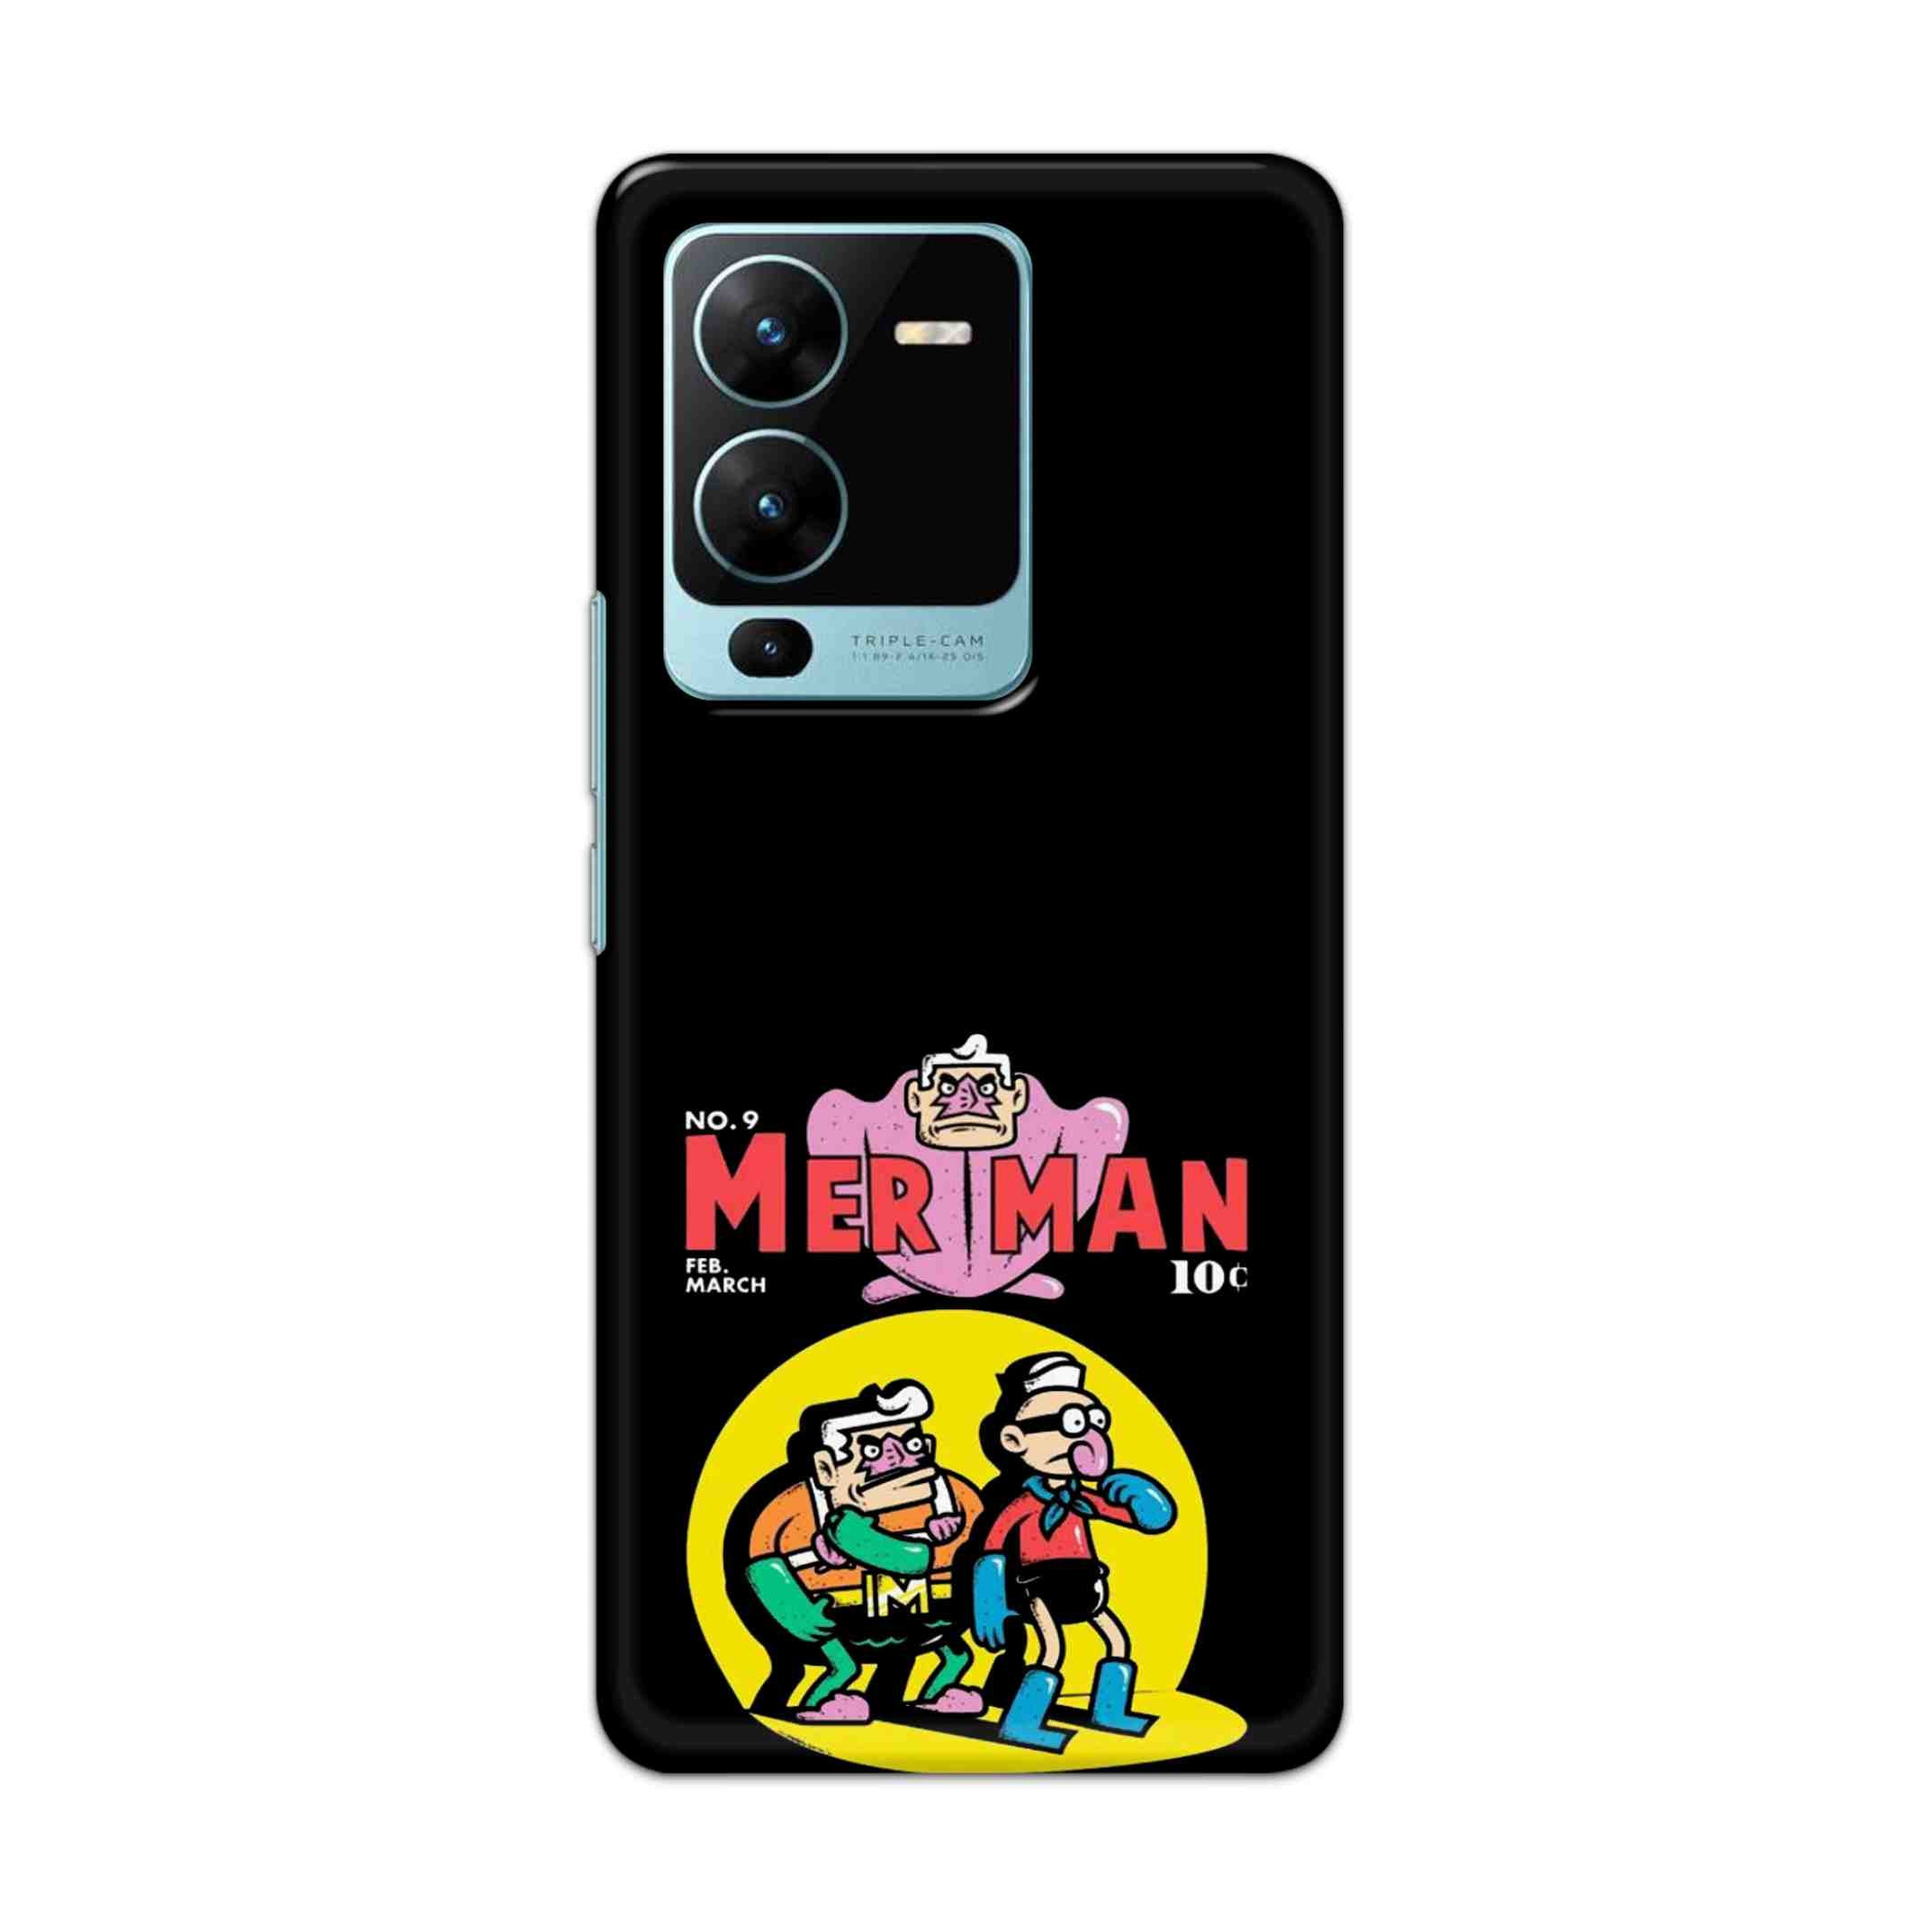 Buy Merman Hard Back Mobile Phone Case Cover For Vivo V25 Pro Online